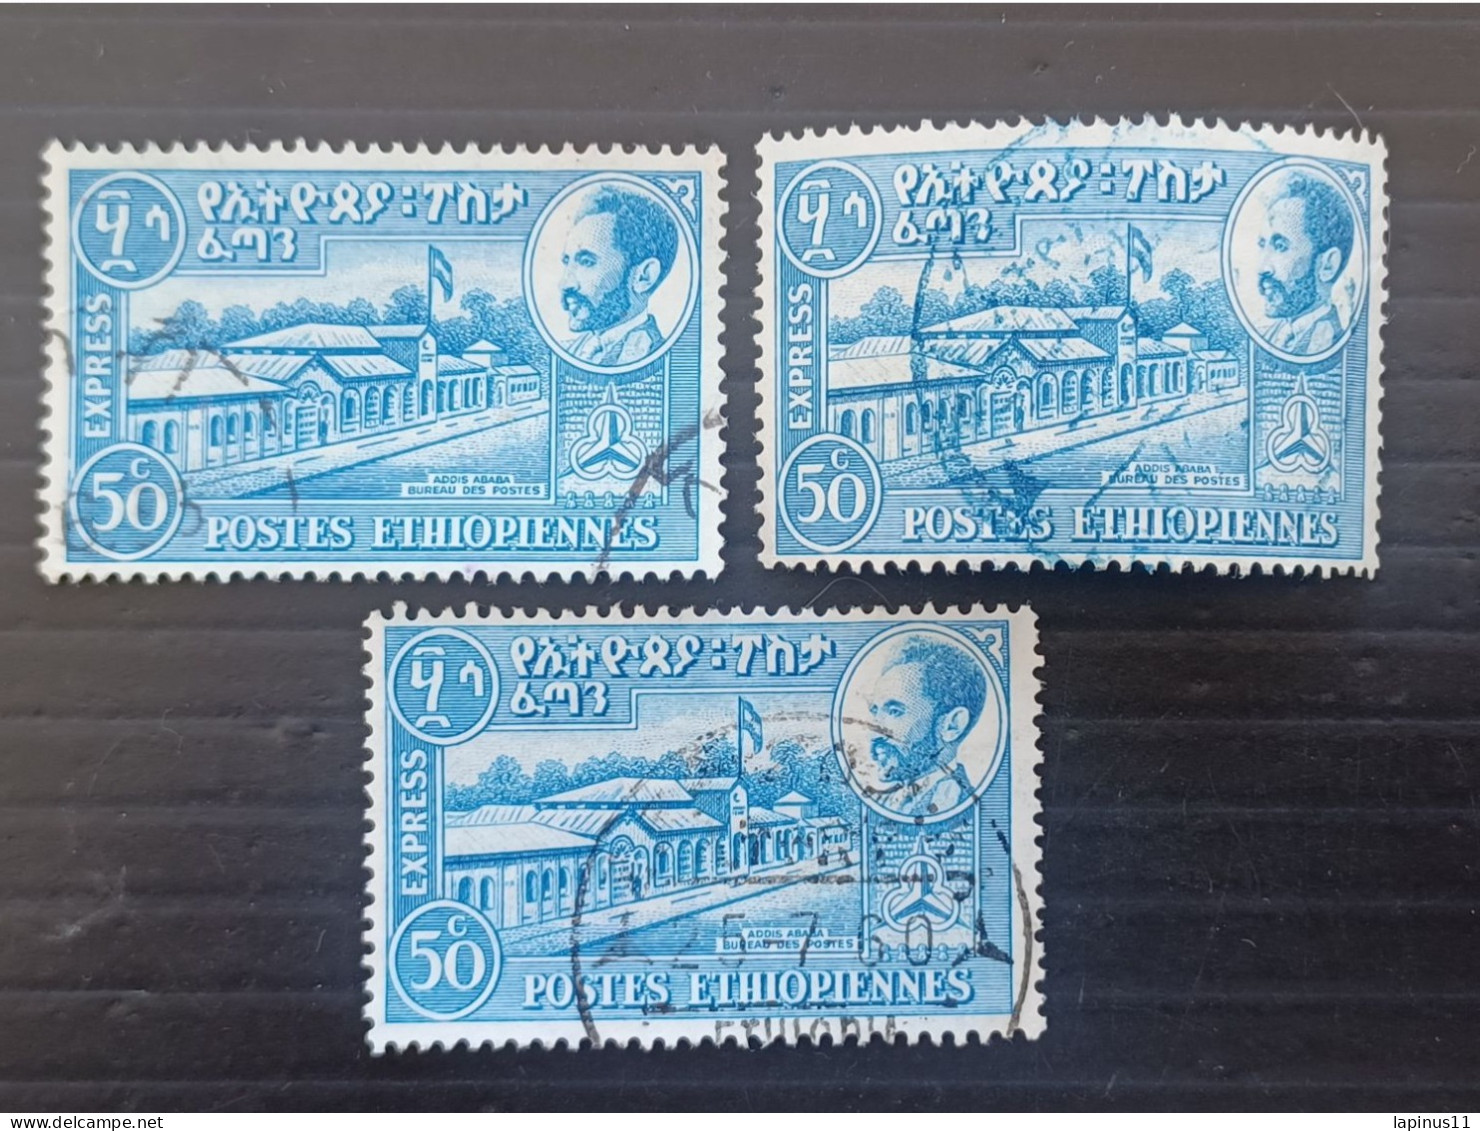 ETIOPIA 1954 EXPRESS STAMPS YVERT N 4 EXCEPTIONAL "A" WATERMARK POSITION ERROR INVERTED - Äthiopien